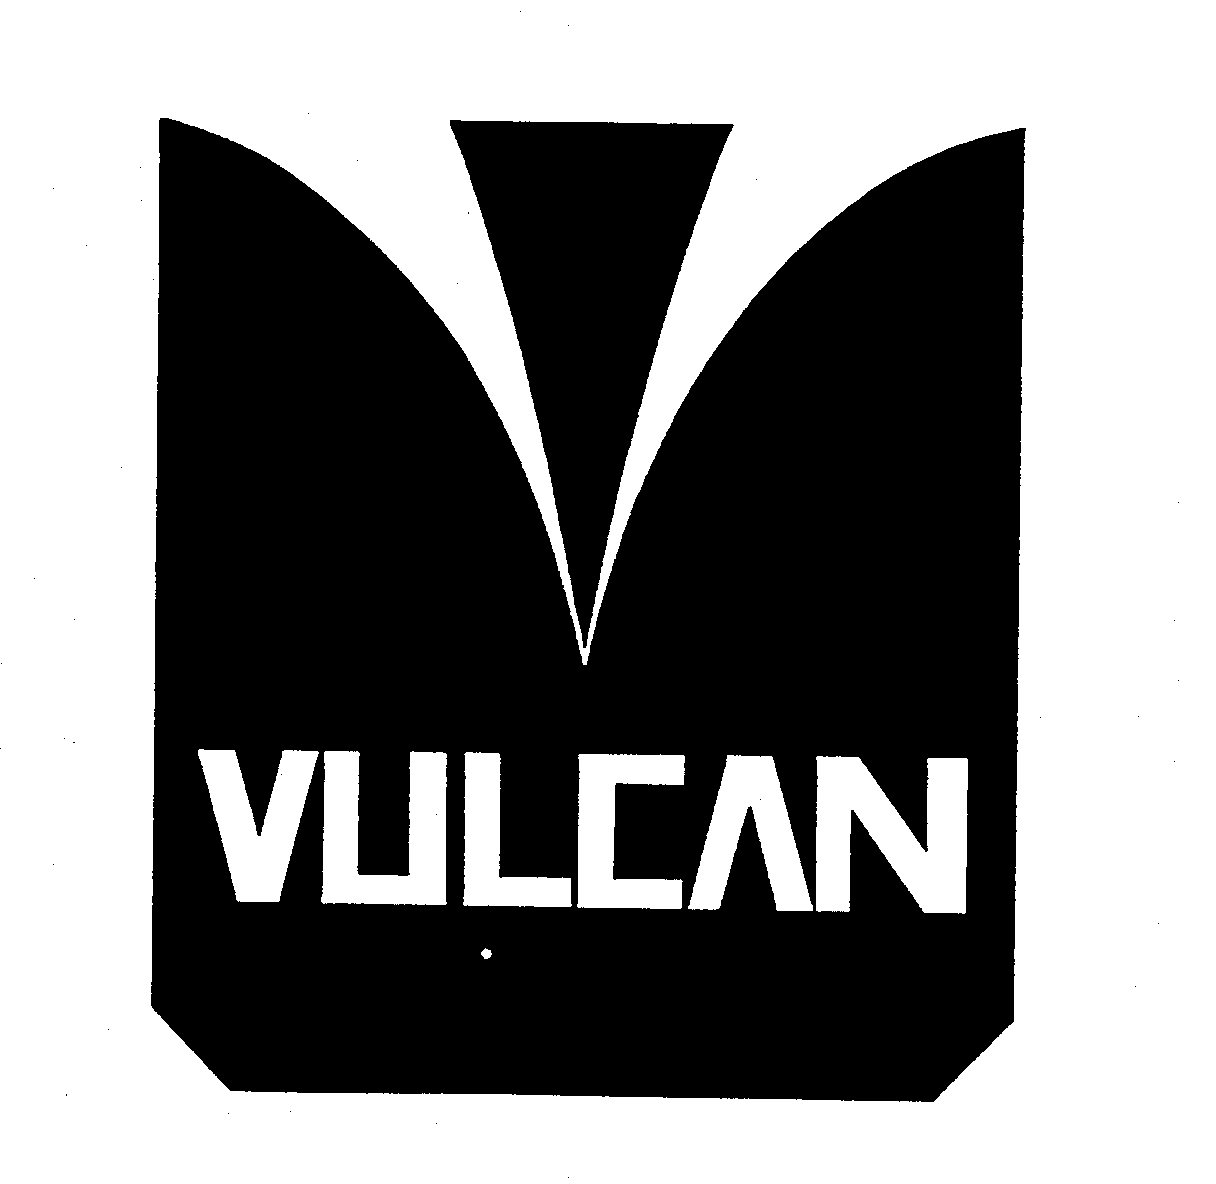  VULCAN